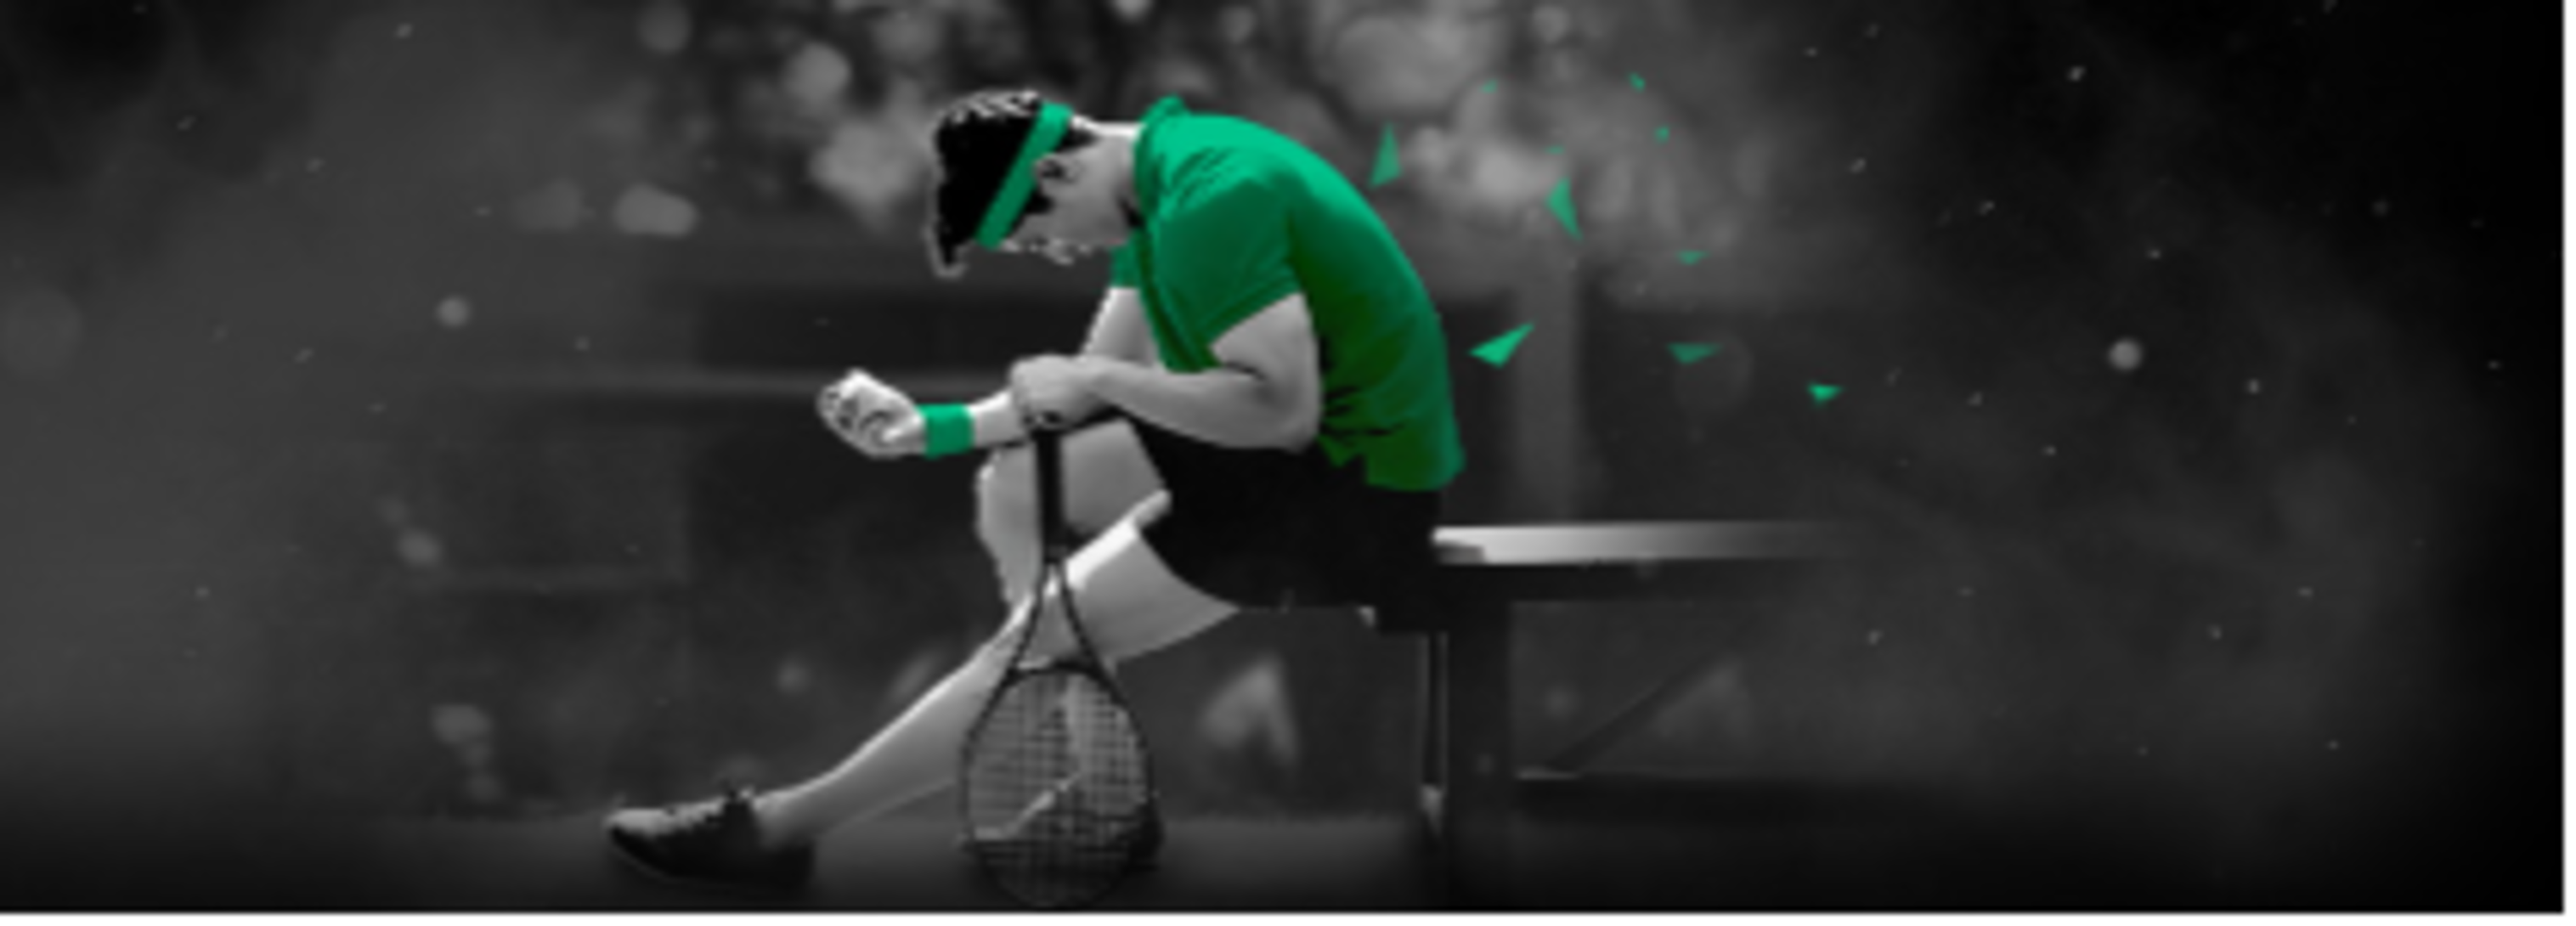 Bet365.com вернет ставку на теннис, если игрока снимут с соревнований